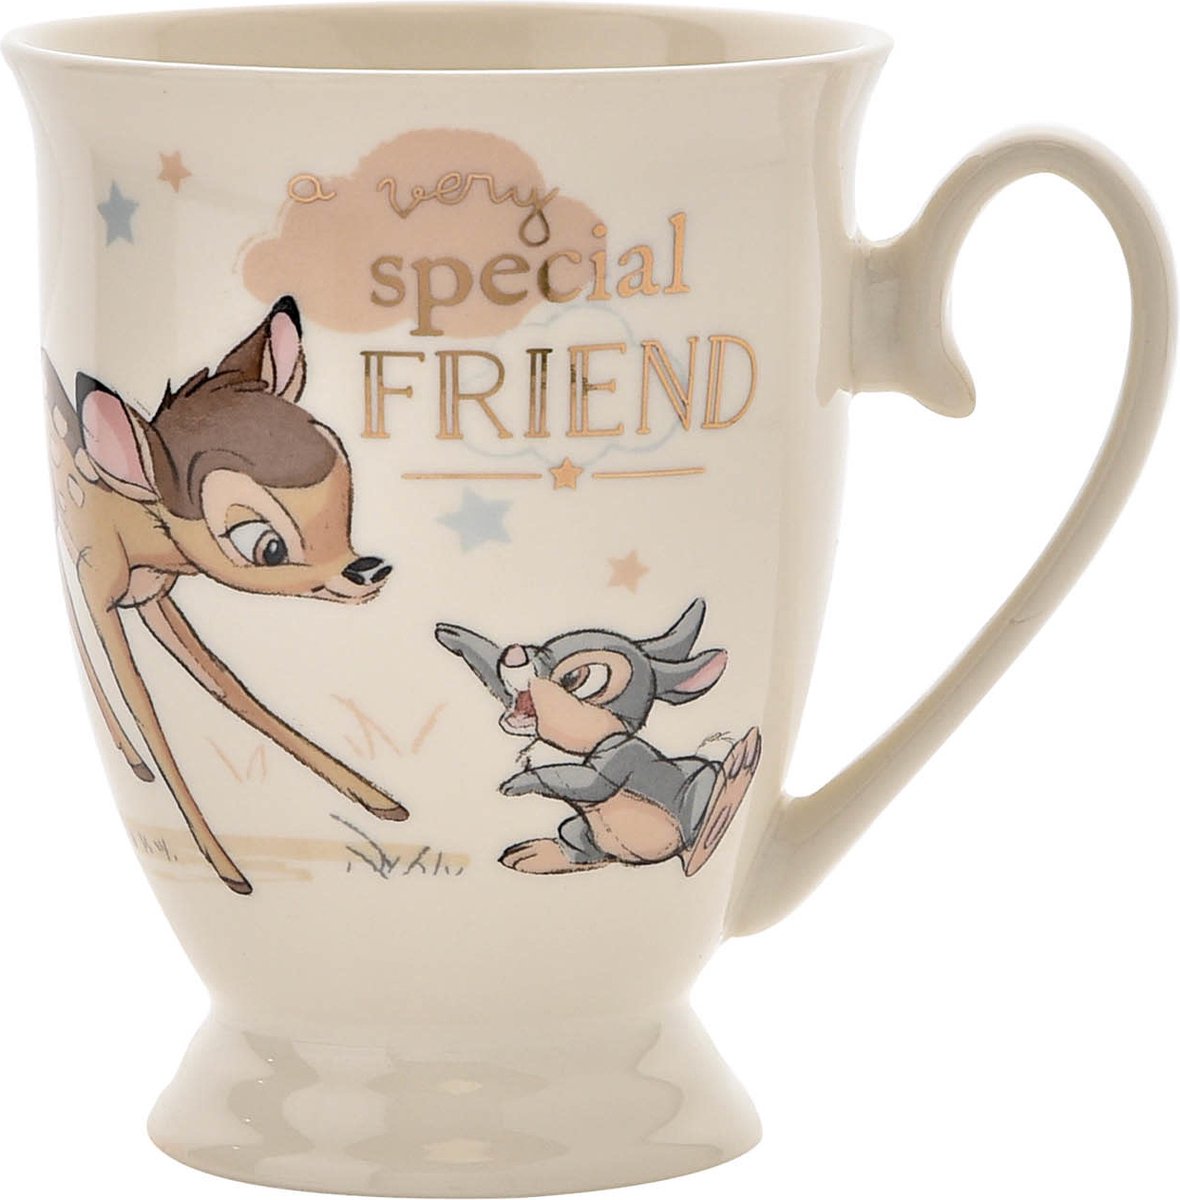 Disney Widdop &Co. Mok Special Friends 11 cm